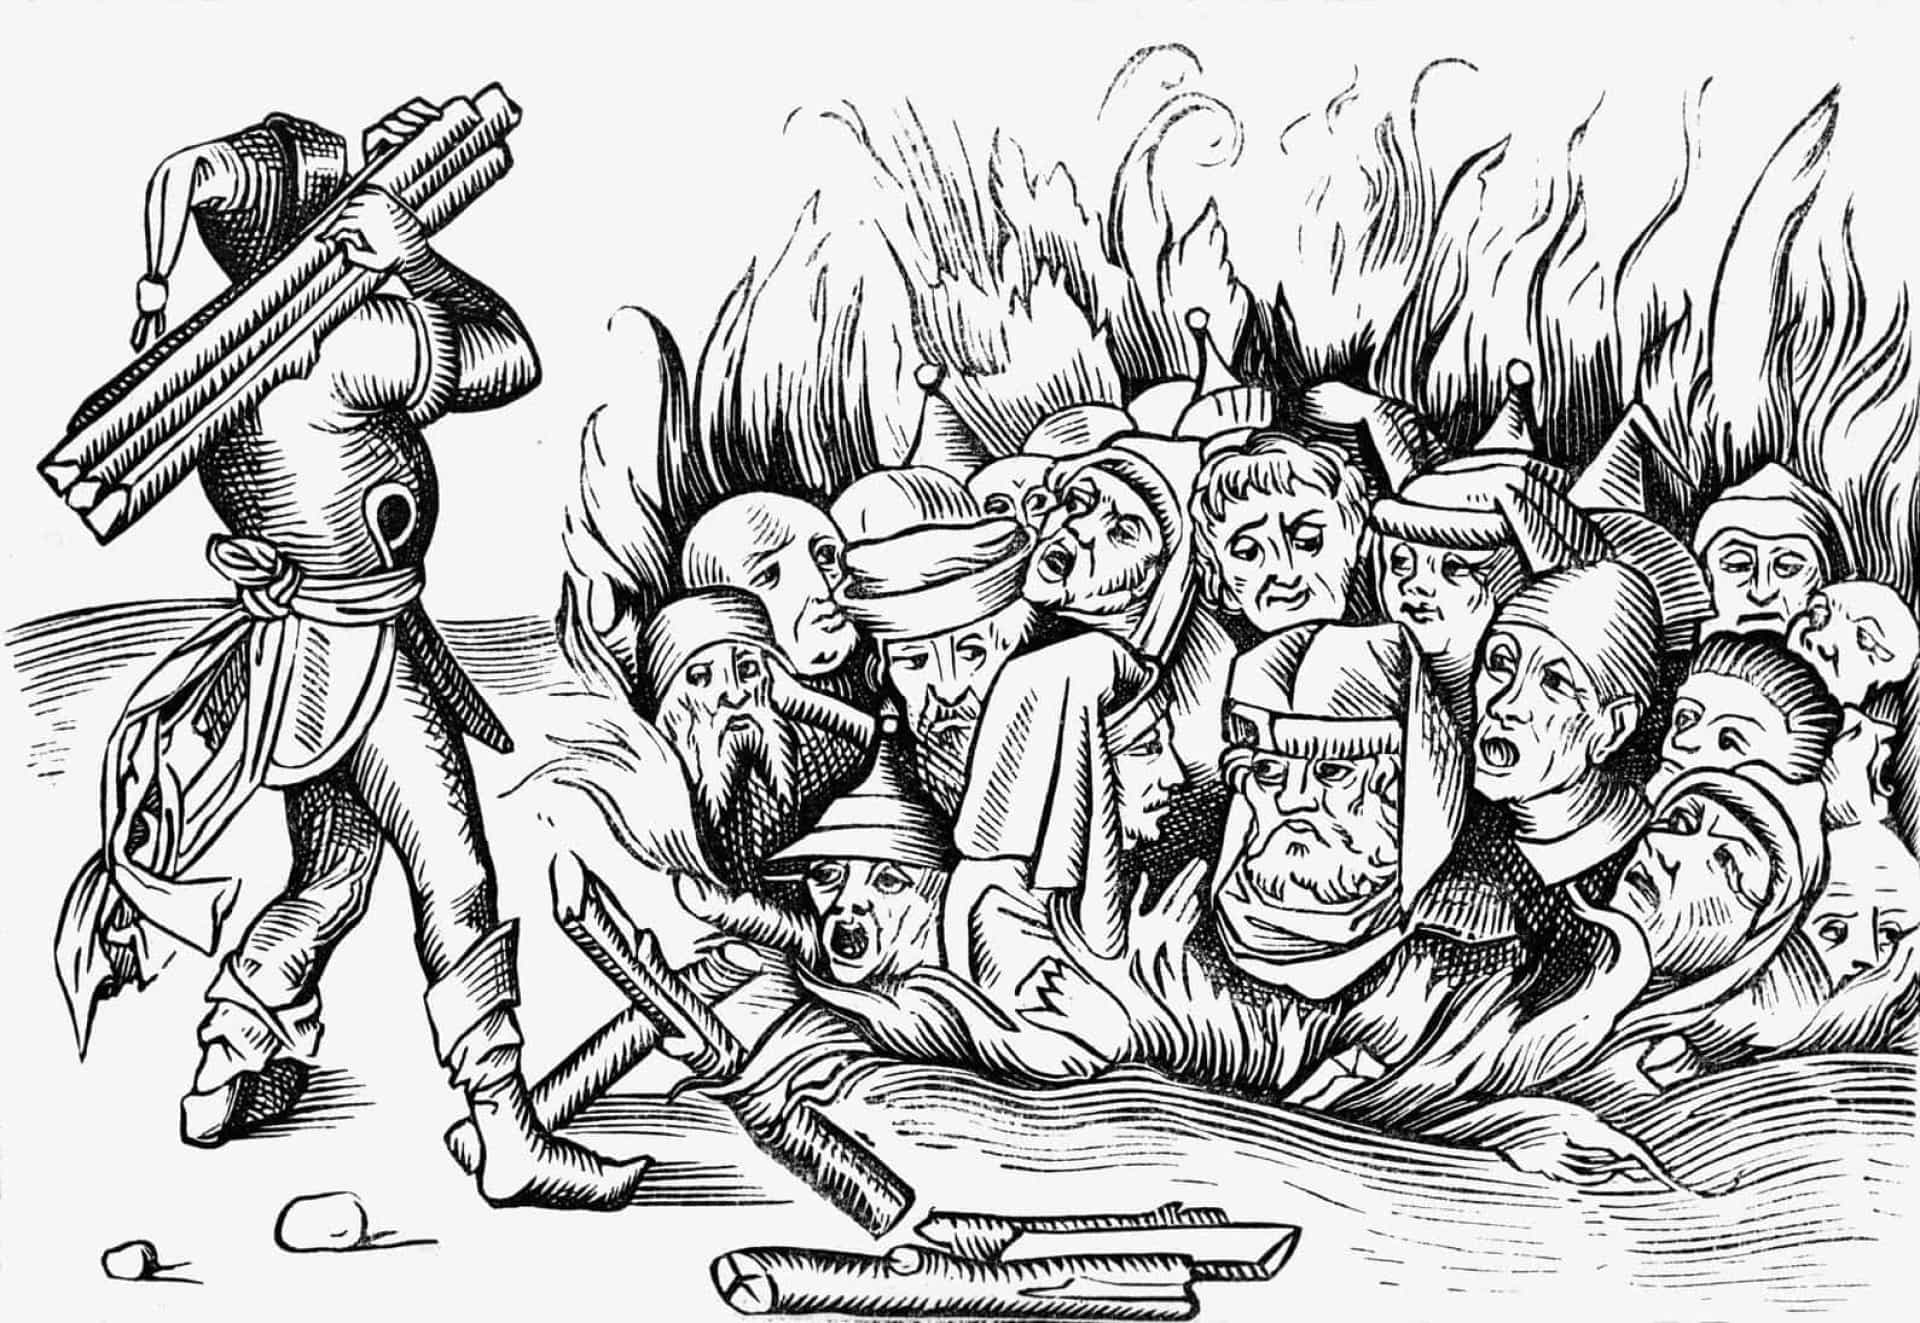 <p>De eerste pogrom (aanval) tegen de joden in Keulen vond plaats in 1349, toen ze beschuldigd werden van het uitbreken van de pest, omdat ze de watervoorziening zouden hebben <a href="https://nl.starsinsider.com/travel/346655/de-dodelijkste-tuin-ter-wereld" rel="noopener">vergiftigd</a>. De vergelding was kort en hevig. Honderden Joden werden opgepakt en in vreugdevuren gegooid. In Straatsburg ondergingen ondertussen 2.000 Joodse inwoners een soortgelijk lot.</p>